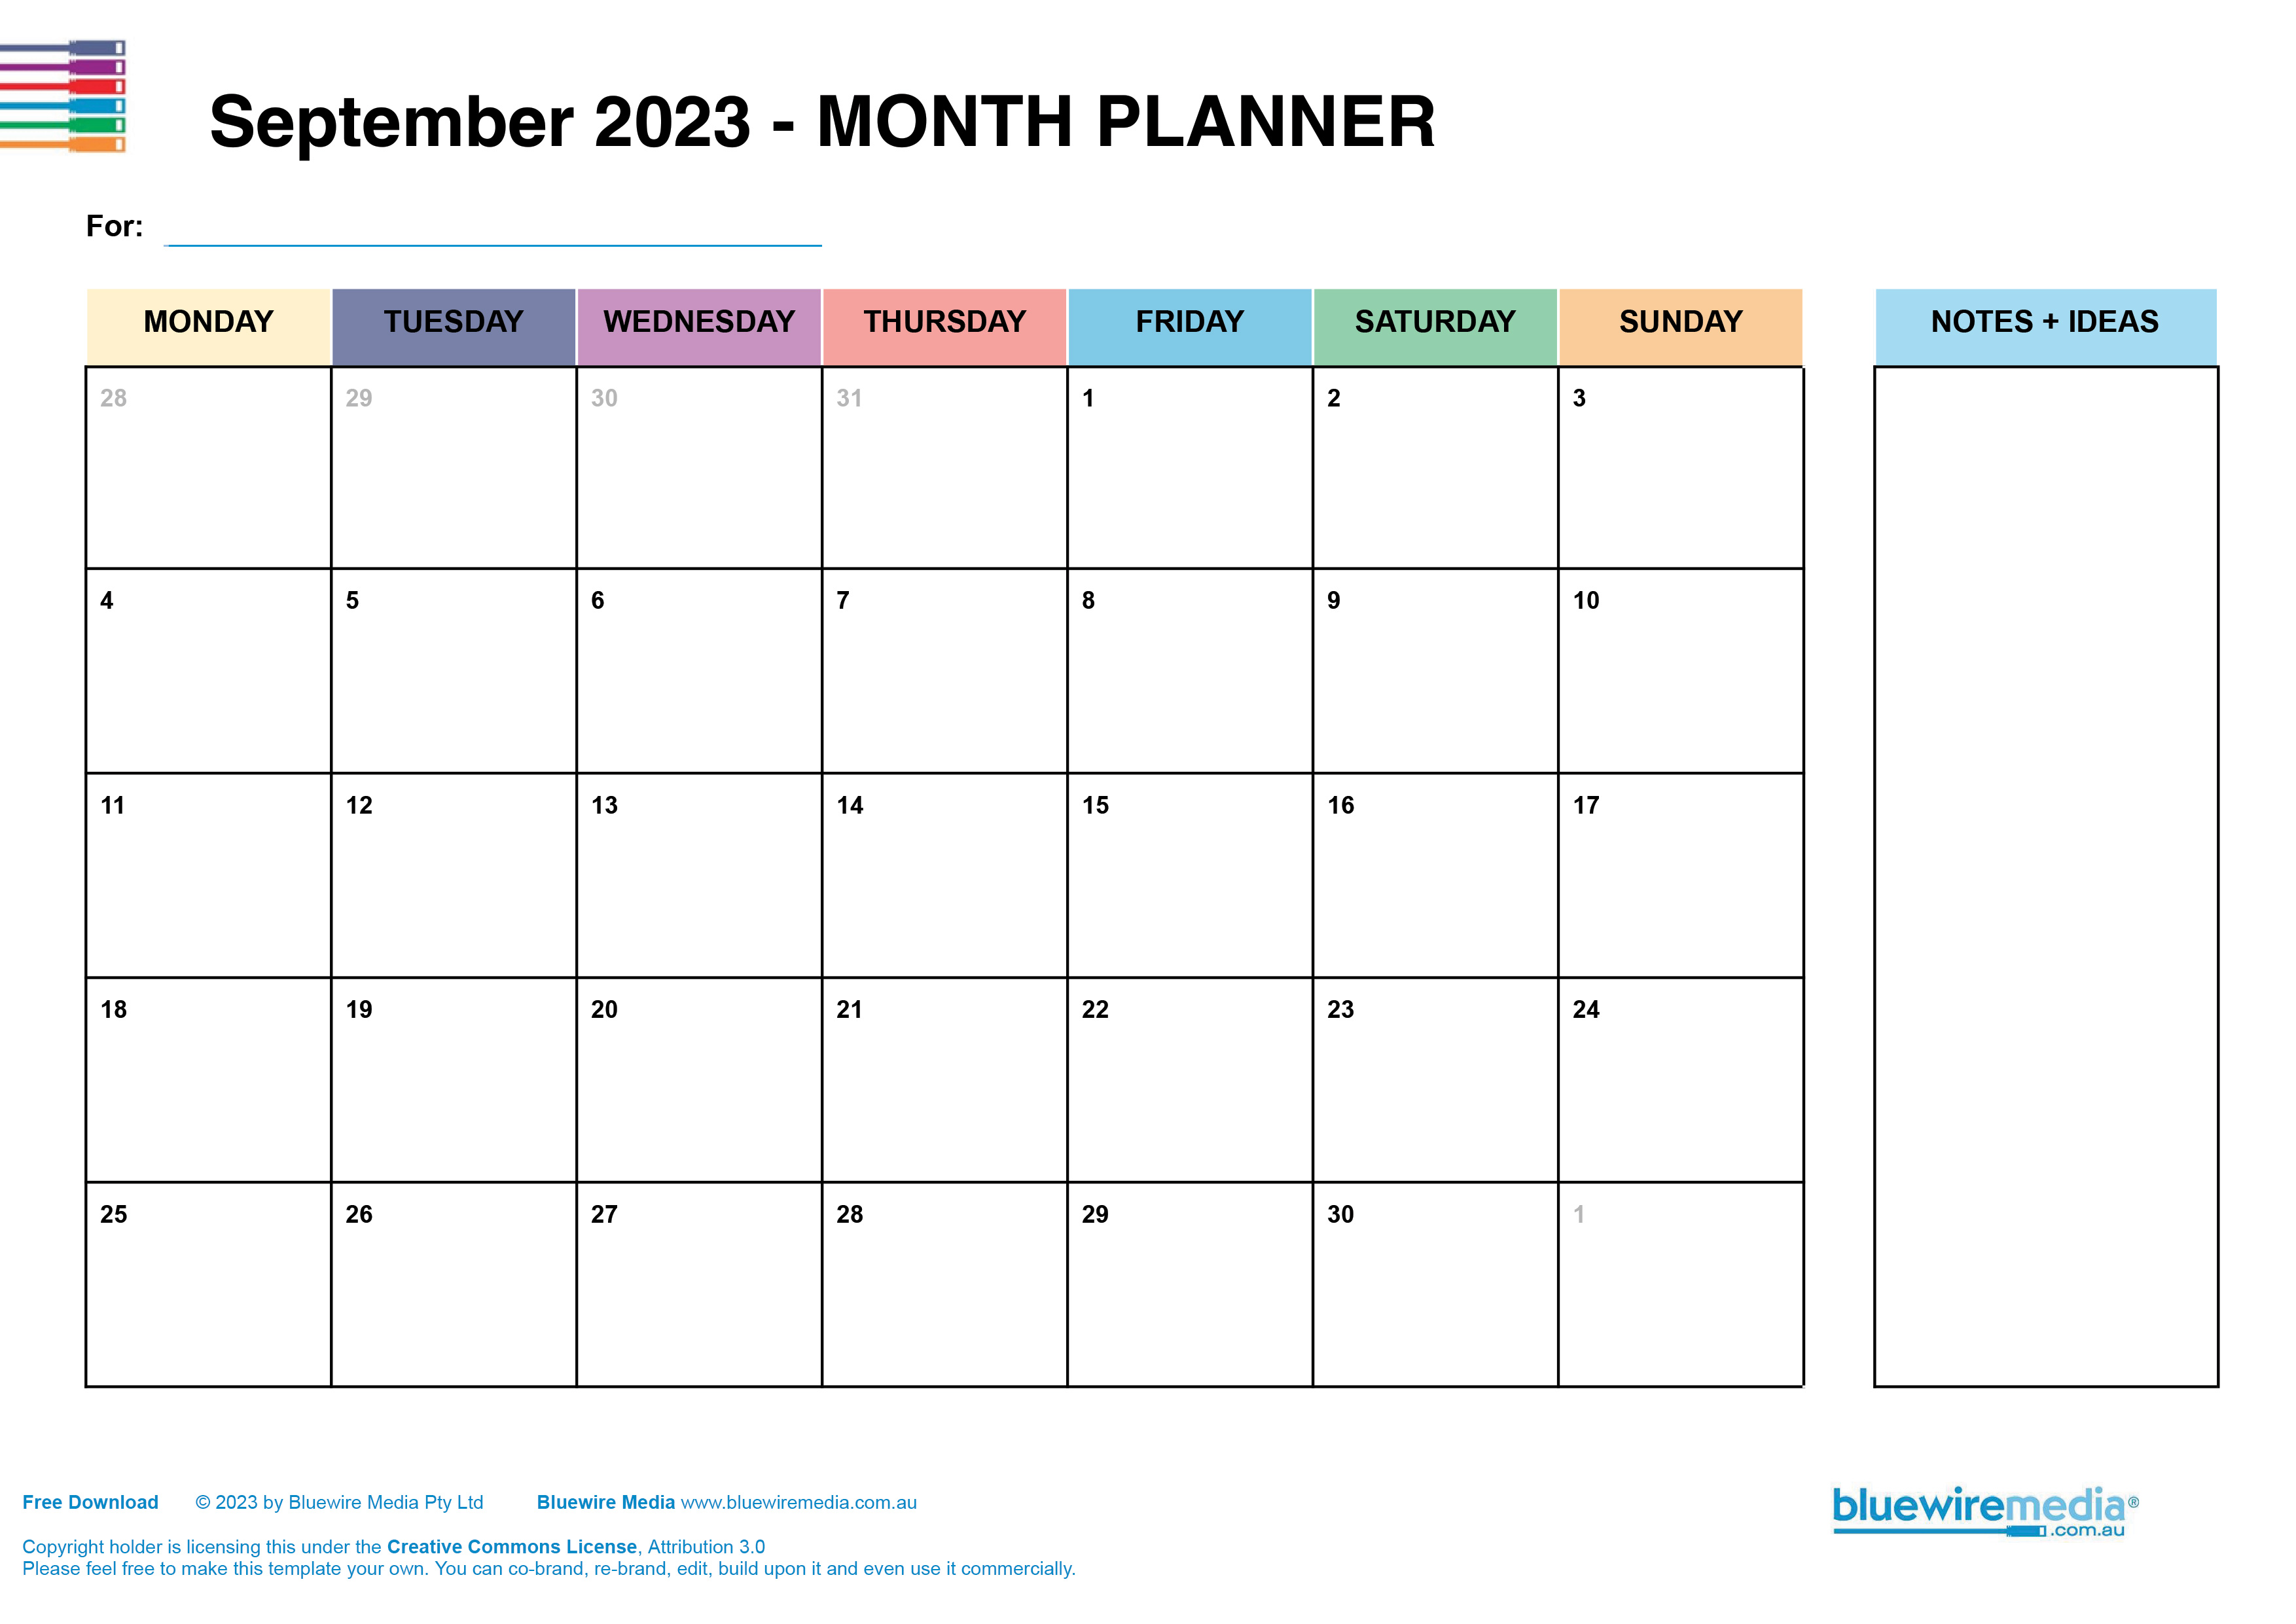 September 2023 Planner